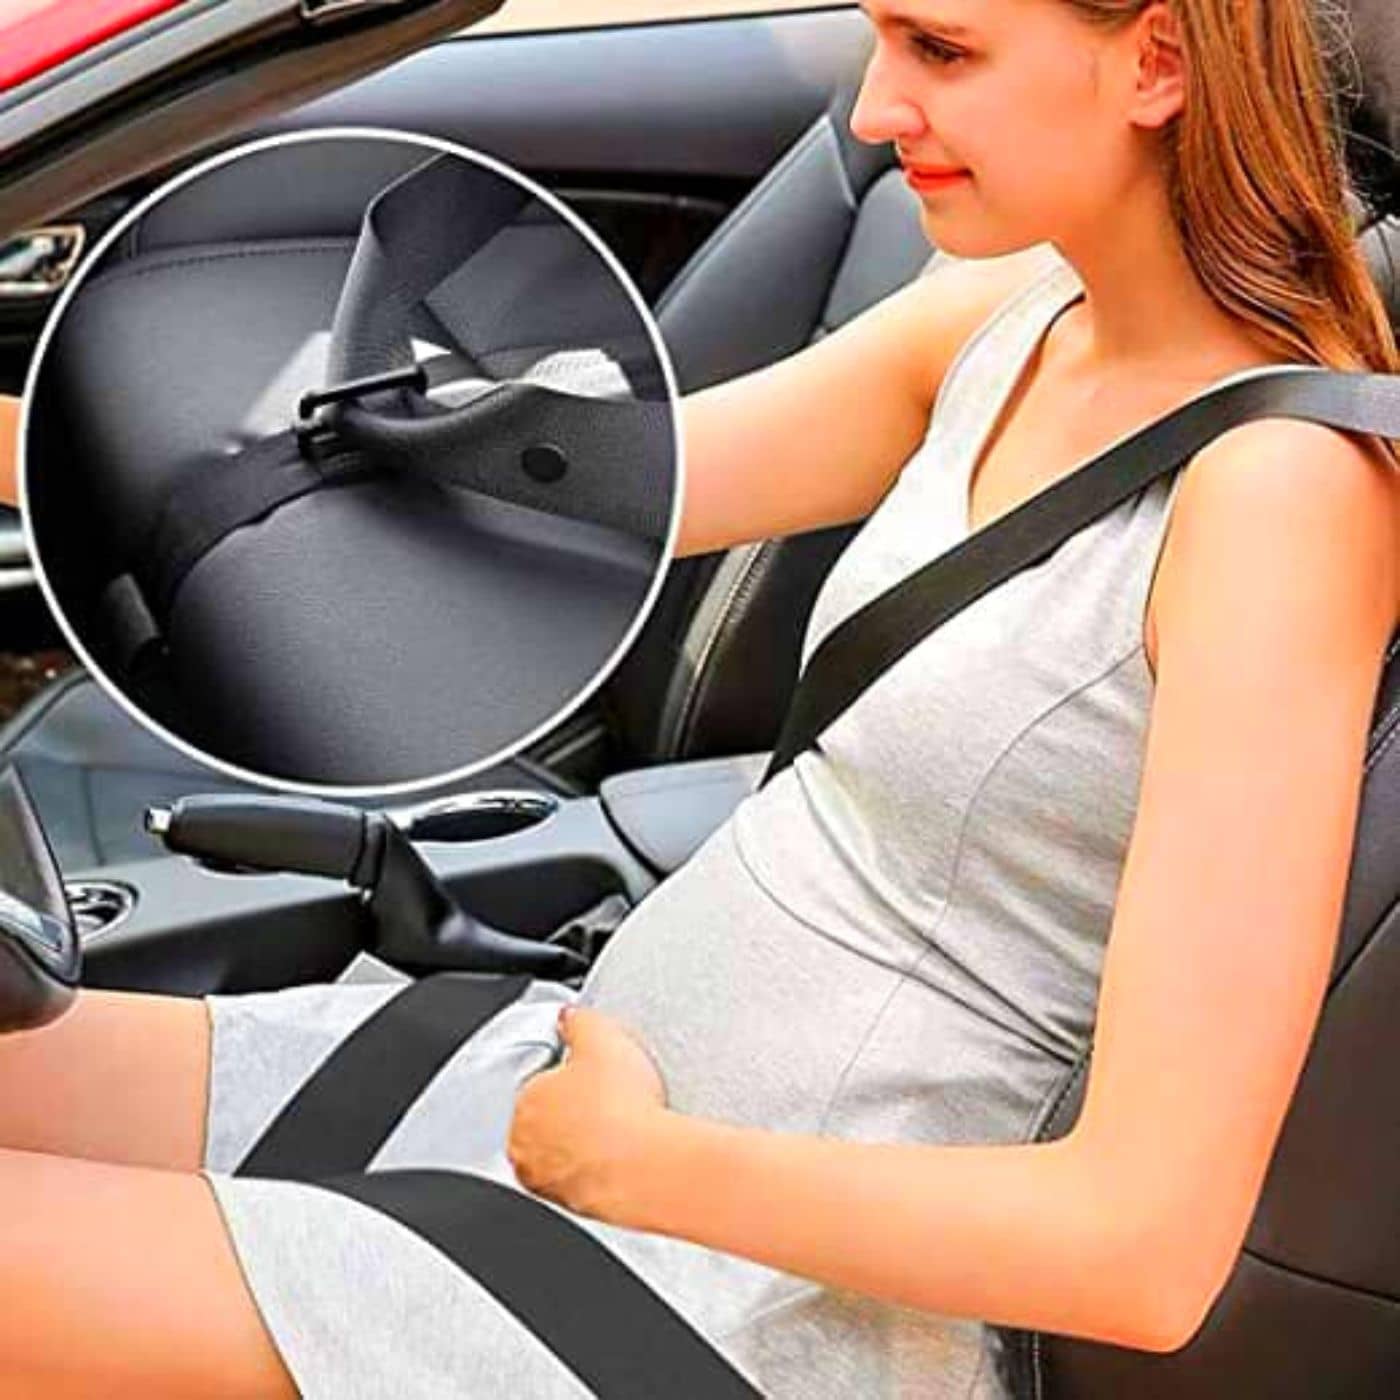 Ceinture voiture femme enceinte - Équipement auto